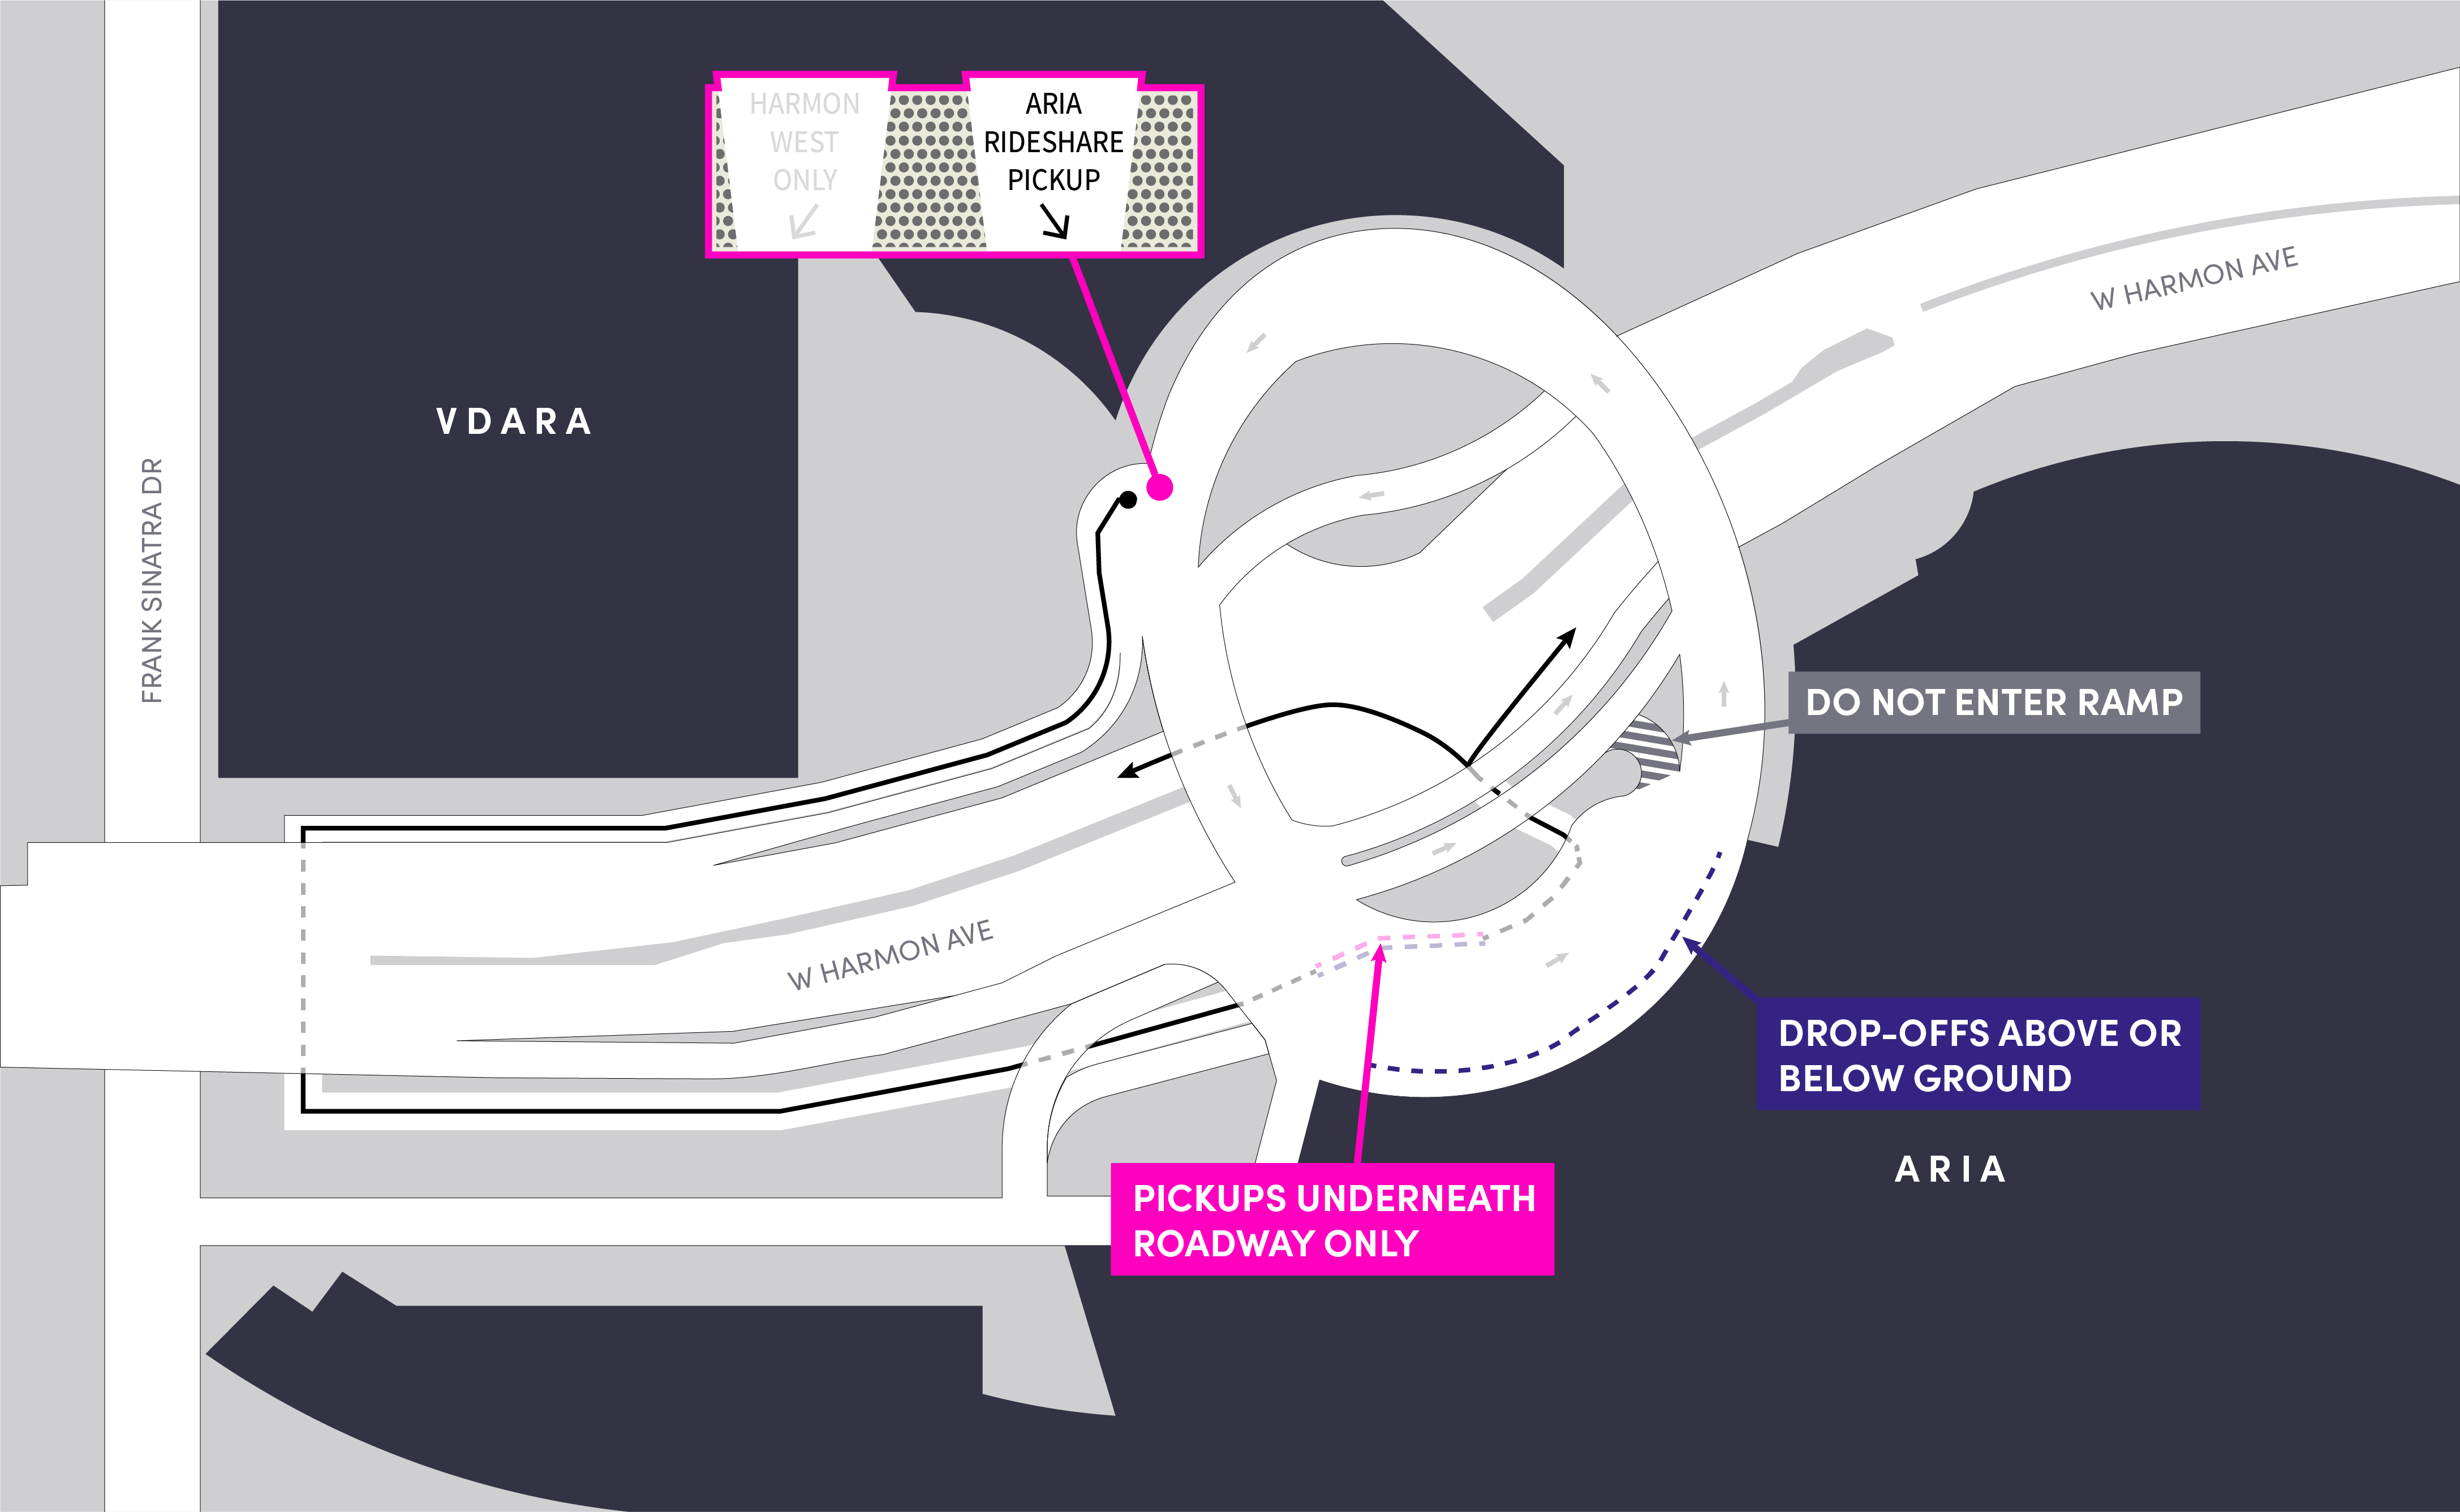 Cette image montre un plan du Aria, y compris les zones de départ et d'arrivée.